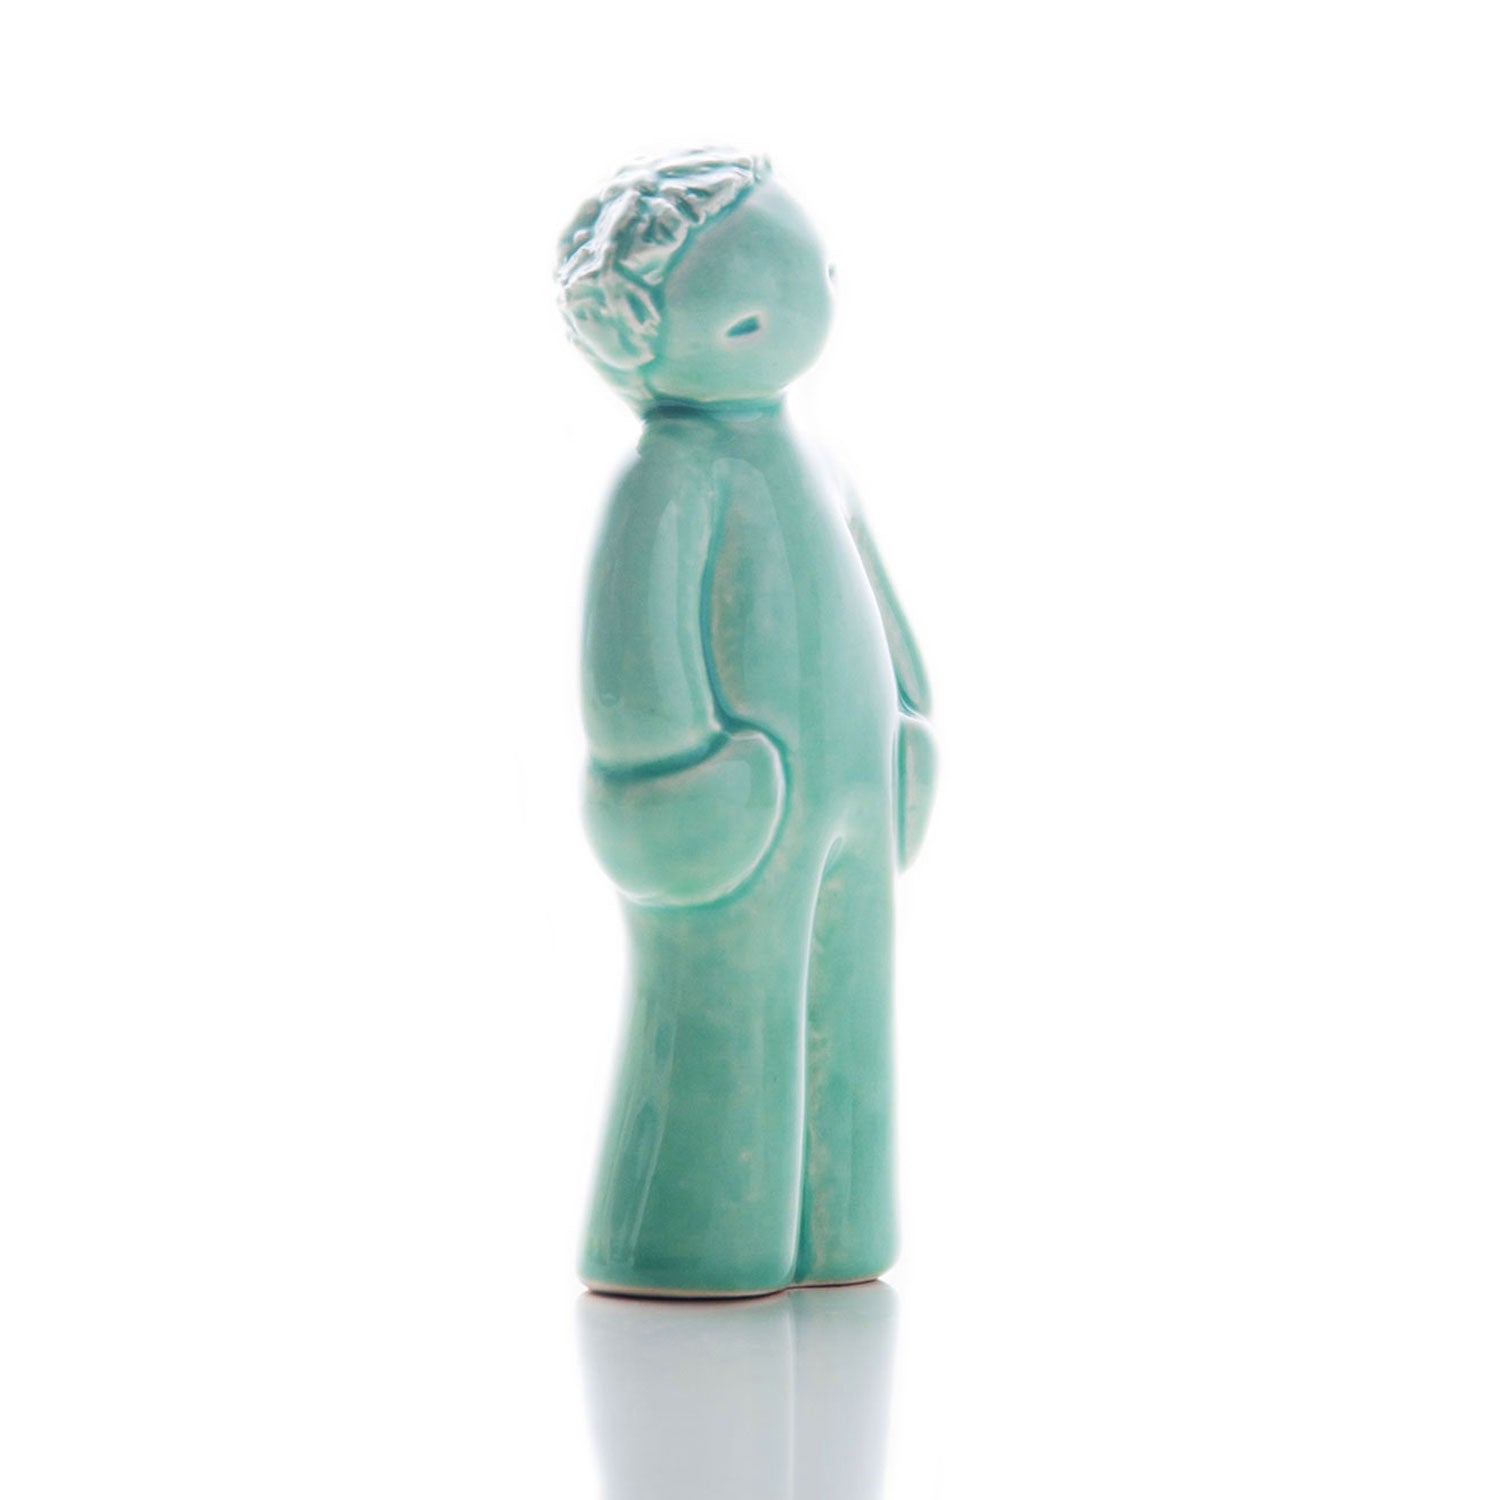 Handmade portuguese ceramic figurine of a boy receiving a kiss.